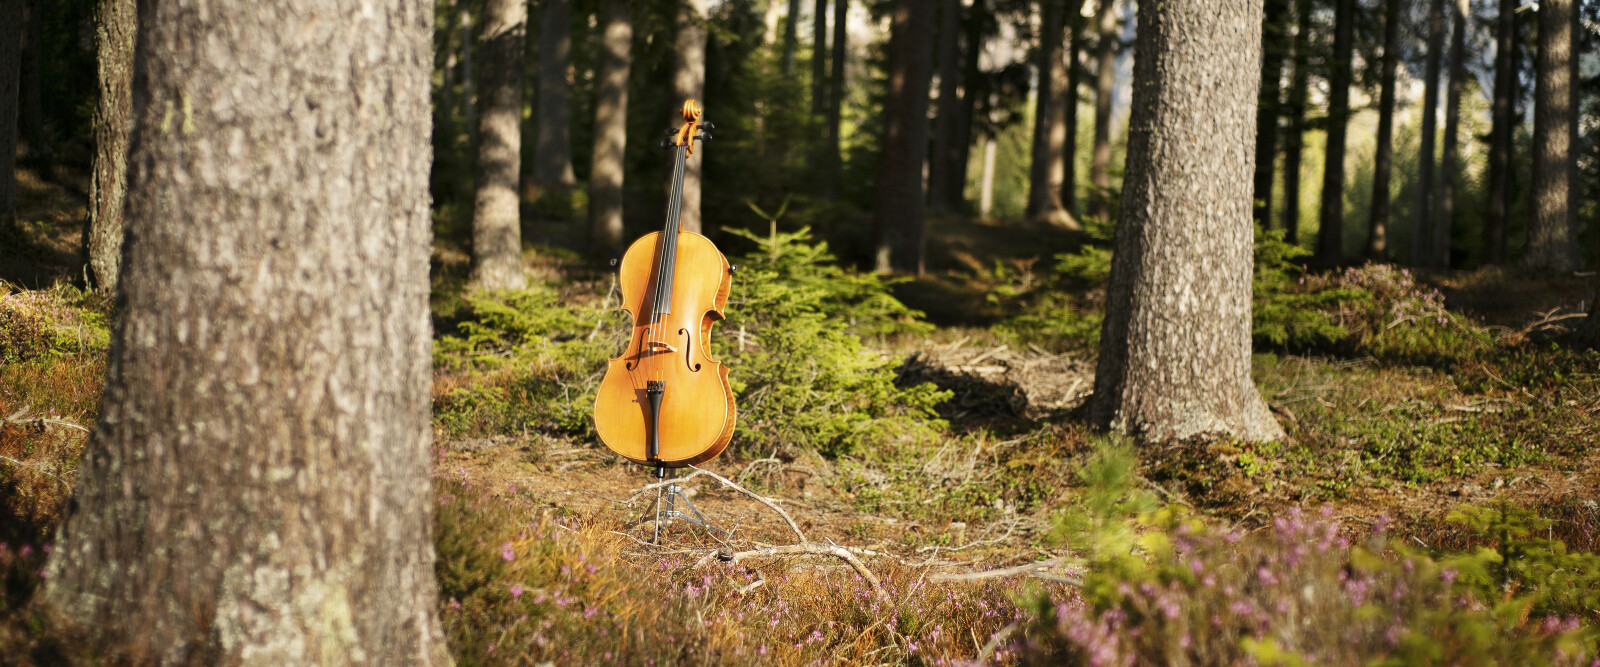 Il bosco cresce in silenzio e a ritmo della musica